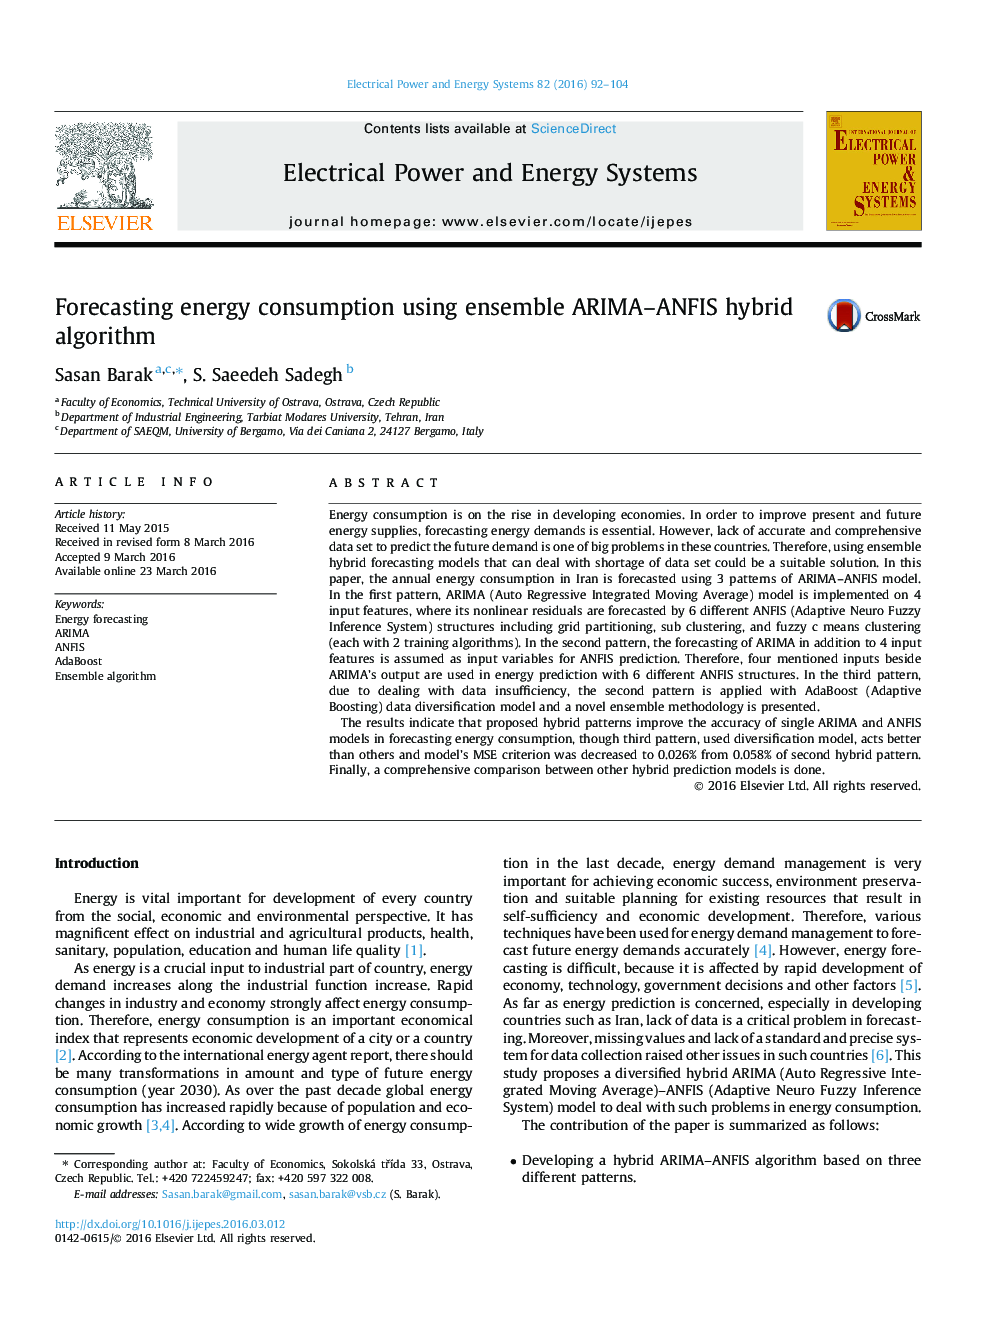 Forecasting energy consumption using ensemble ARIMA–ANFIS hybrid algorithm